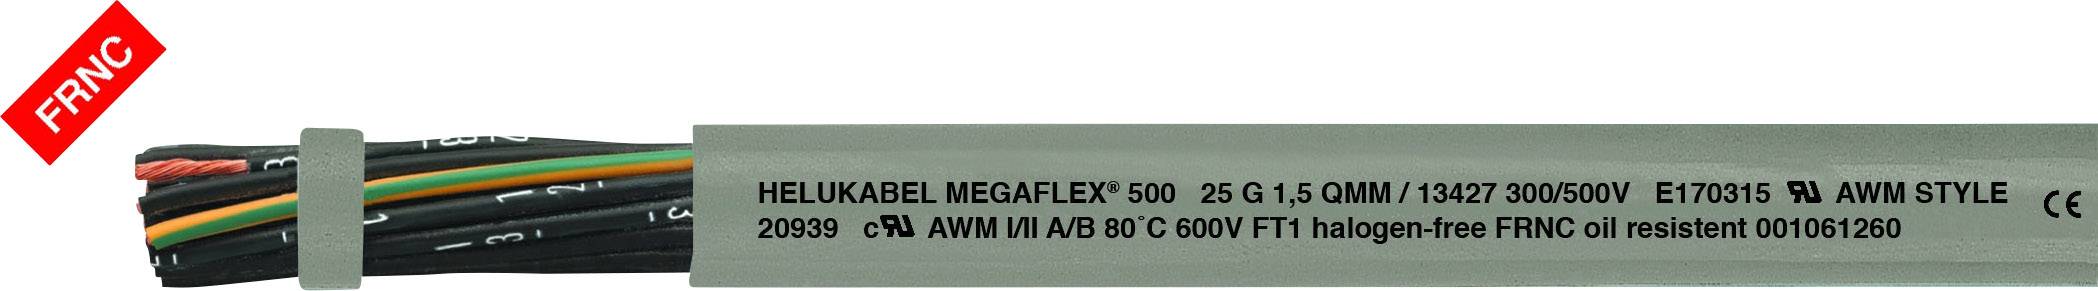 HELUKABEL MEGAFLEX® 500 Steuerleitung 5 G 0.75 mm² Grau 13373 Meterware